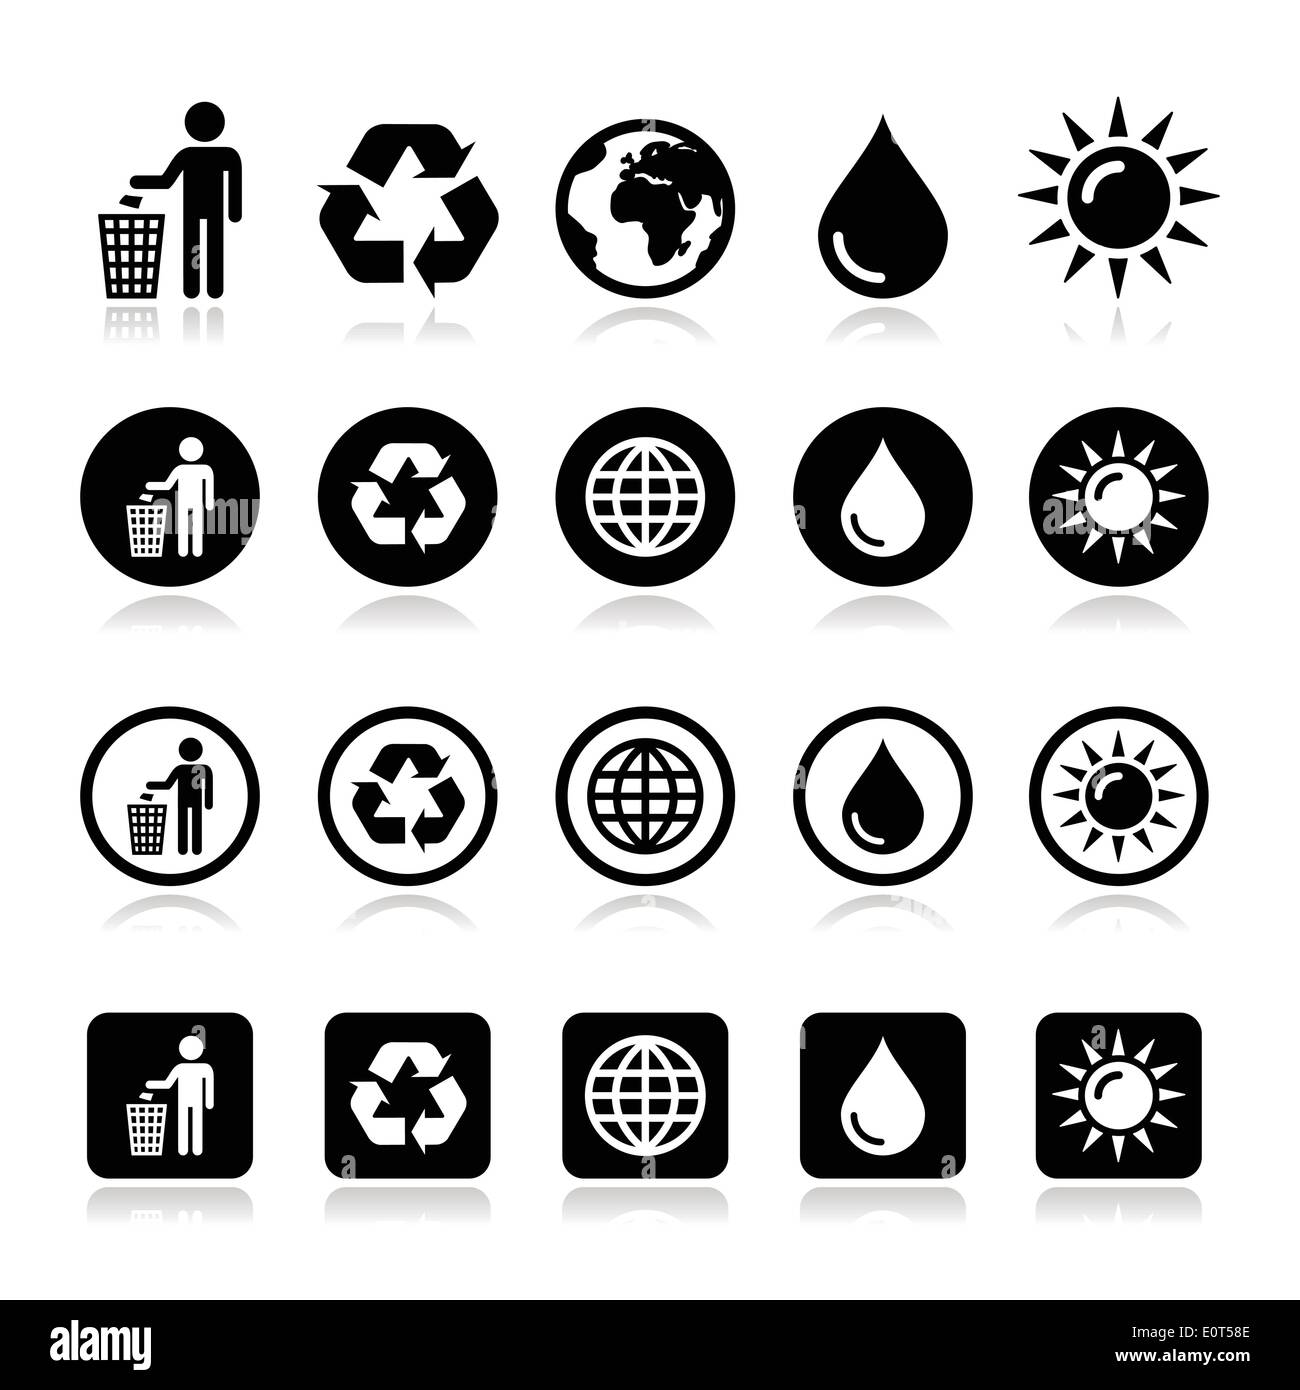 L'homme et bin, recyclage, globe, eco power icons set Illustration de Vecteur